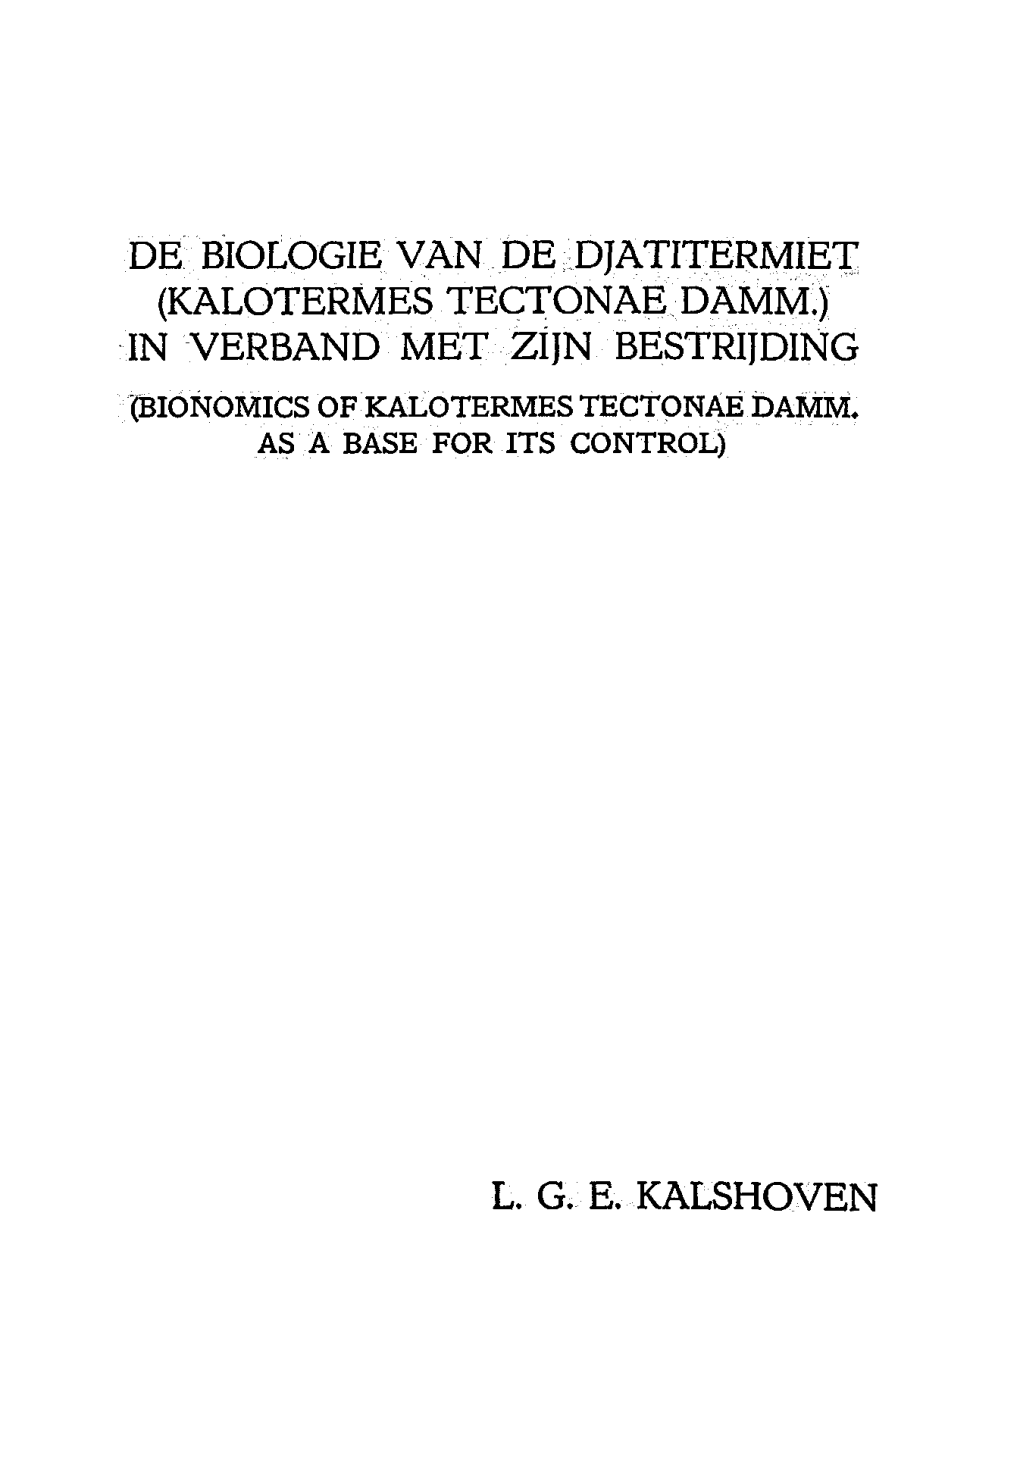 Kalotermes Tectonae Damm.) in Verband Met Zijn Bestrijding Bionomicso Fkaloterme Stectona Edamm , As a Base for Its Control